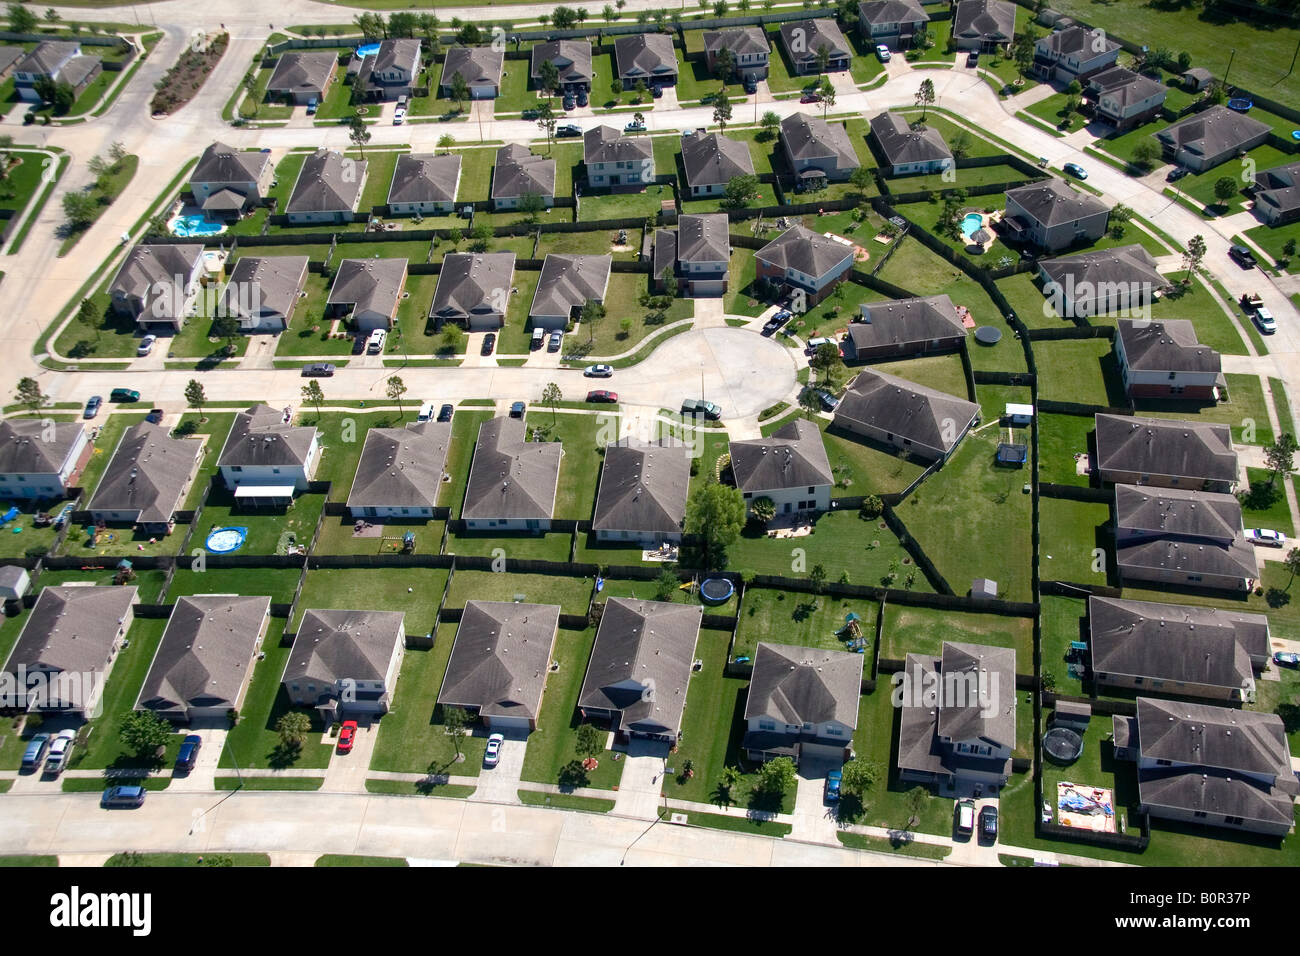 Vue aérienne d'une subdivision de banlieue près de Houston au Texas Banque D'Images